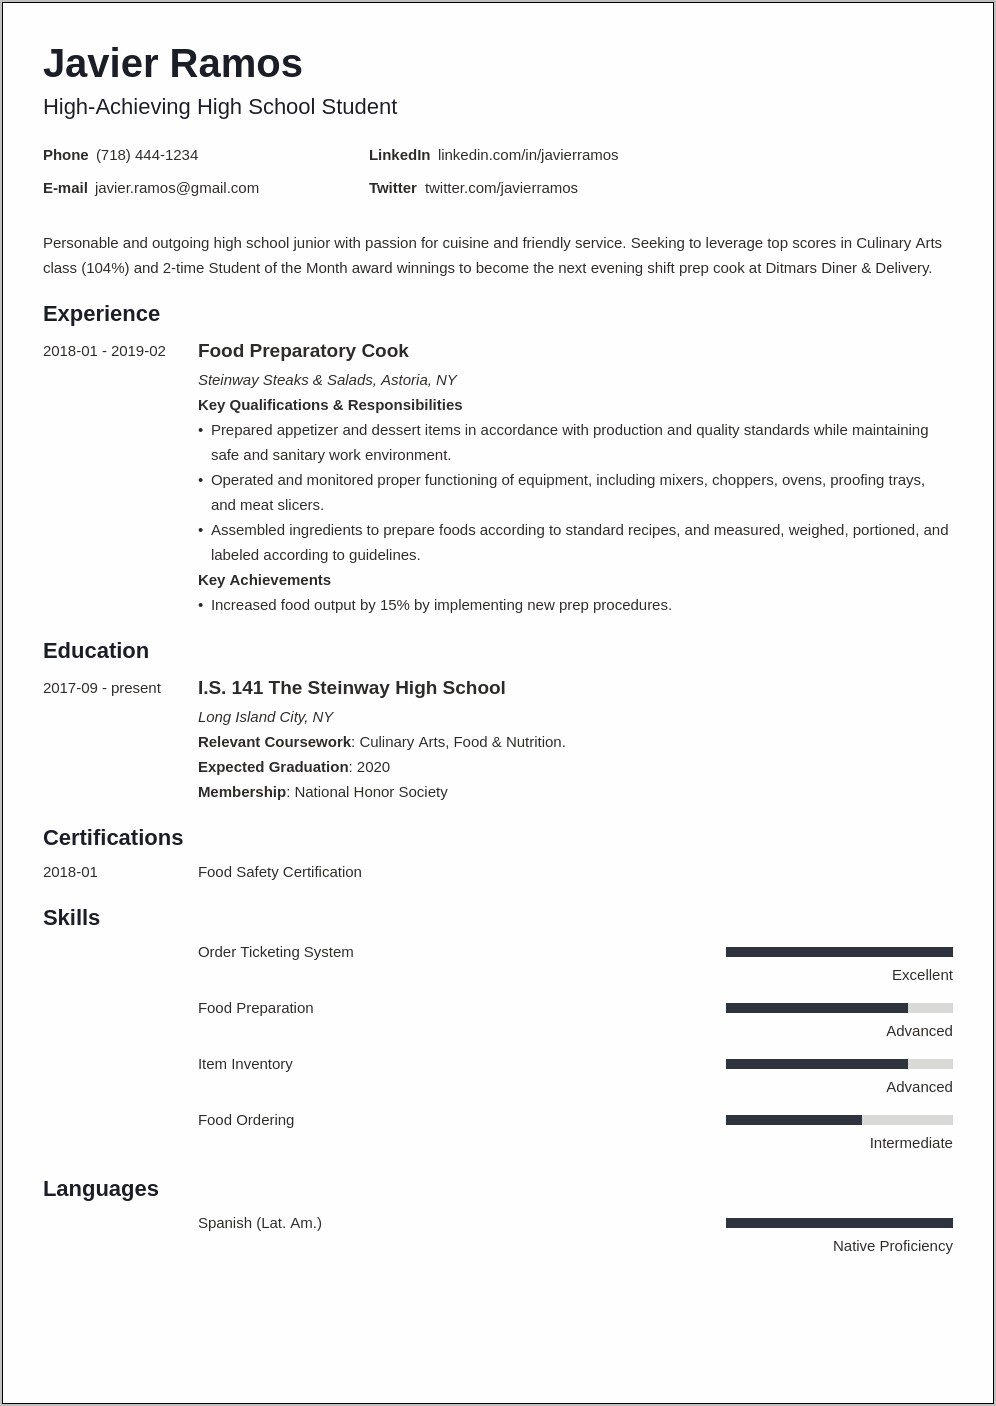 Resume Objective For High School Senior